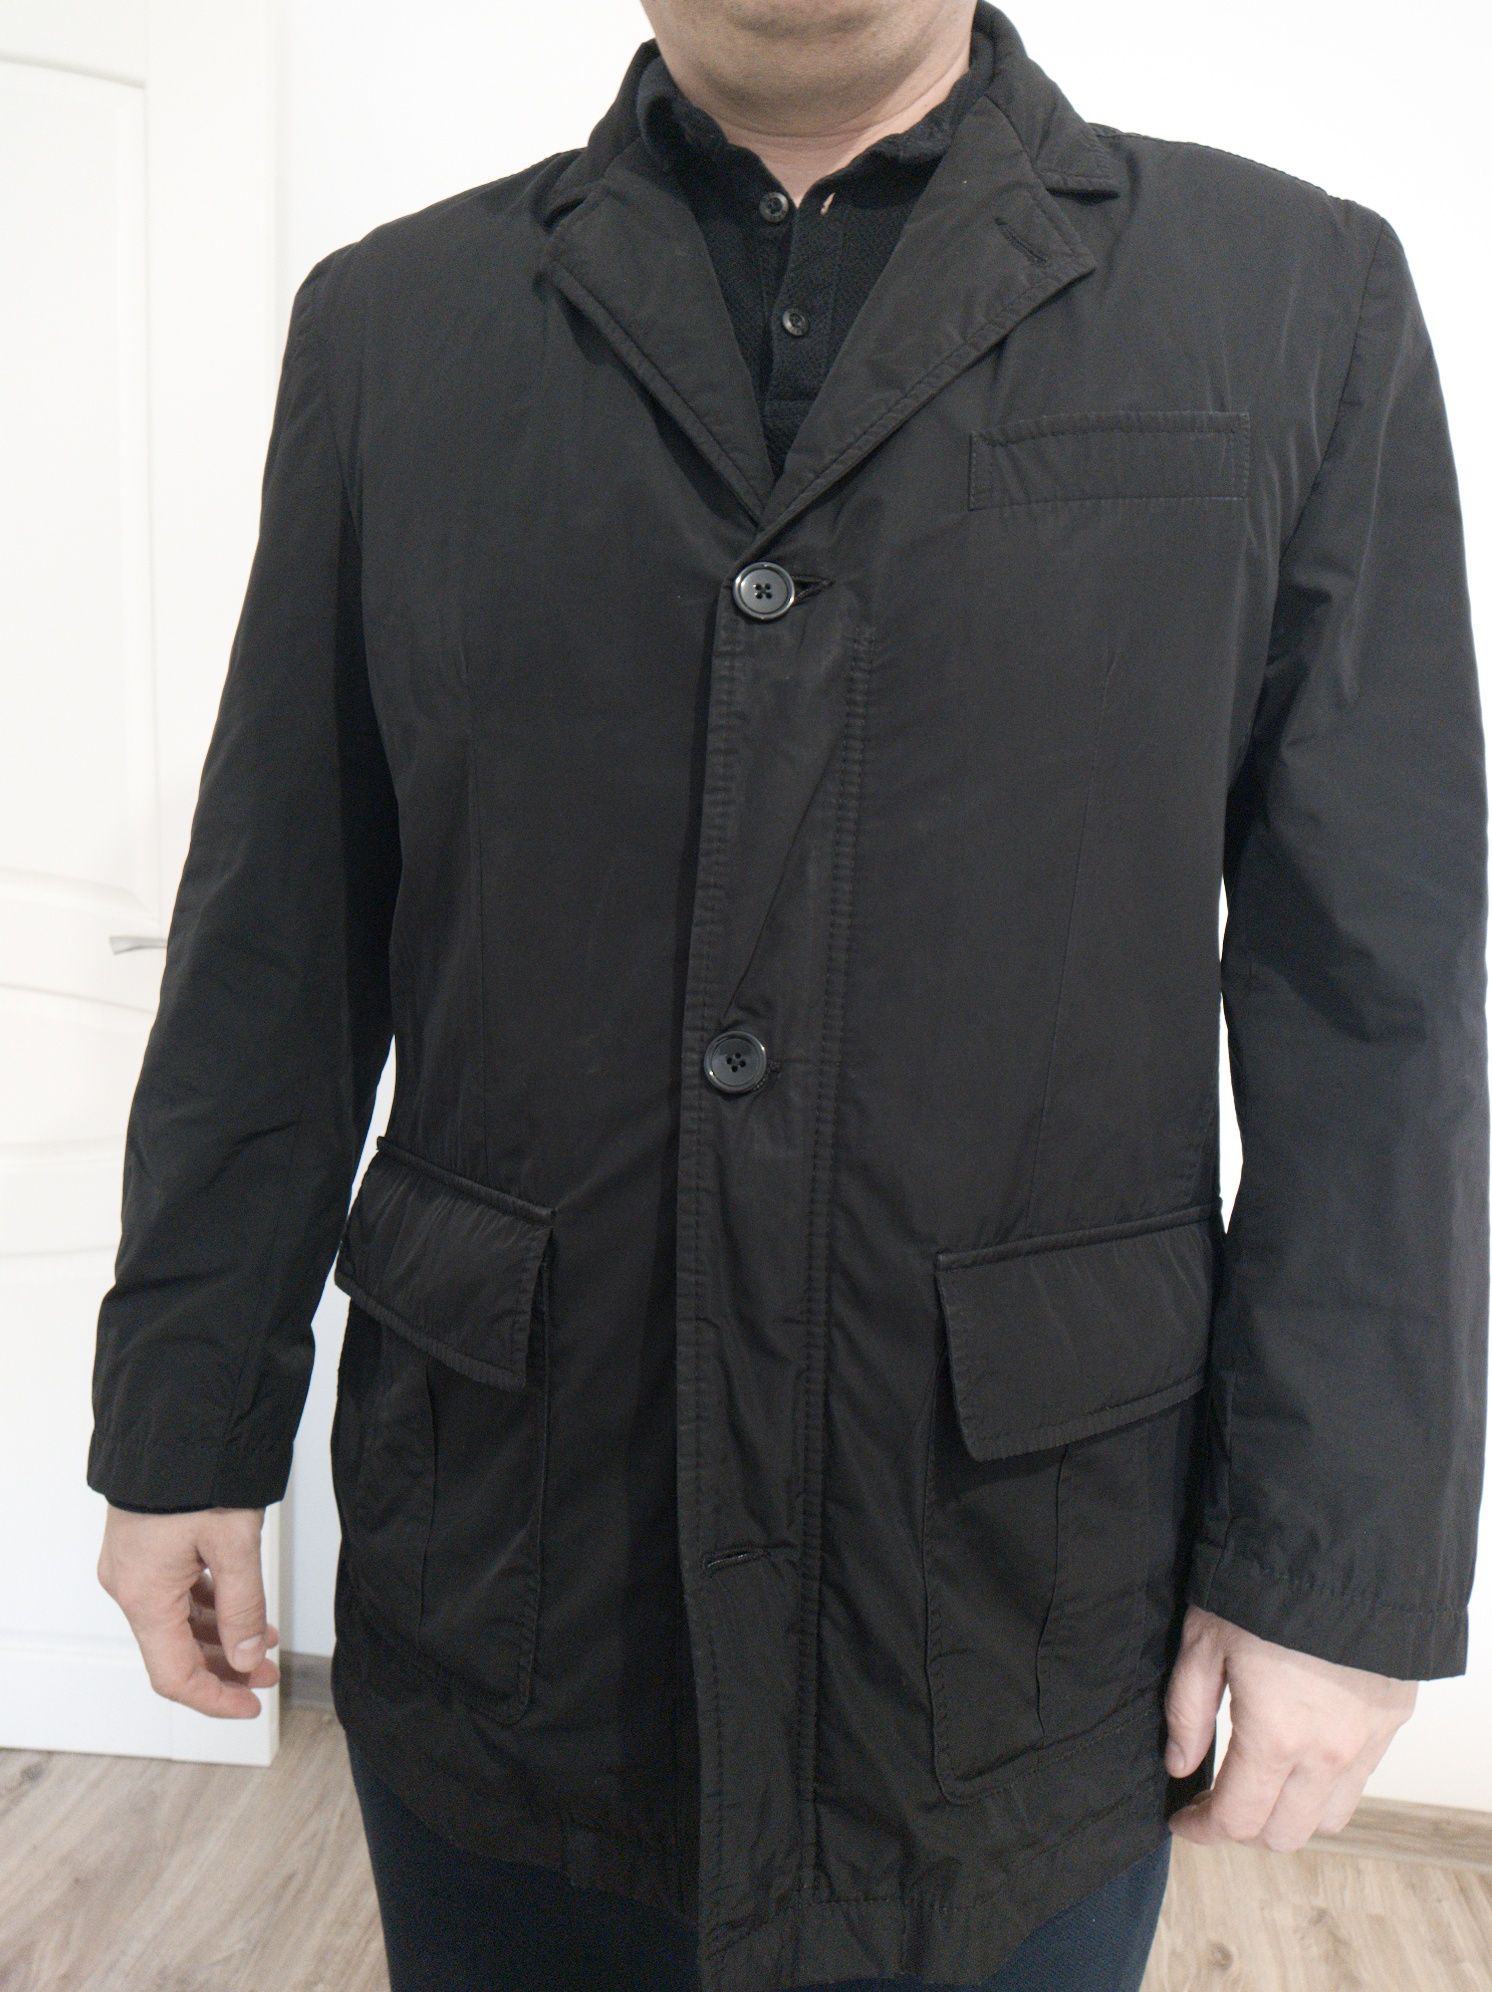 Продам мужской пиджак (куртка)